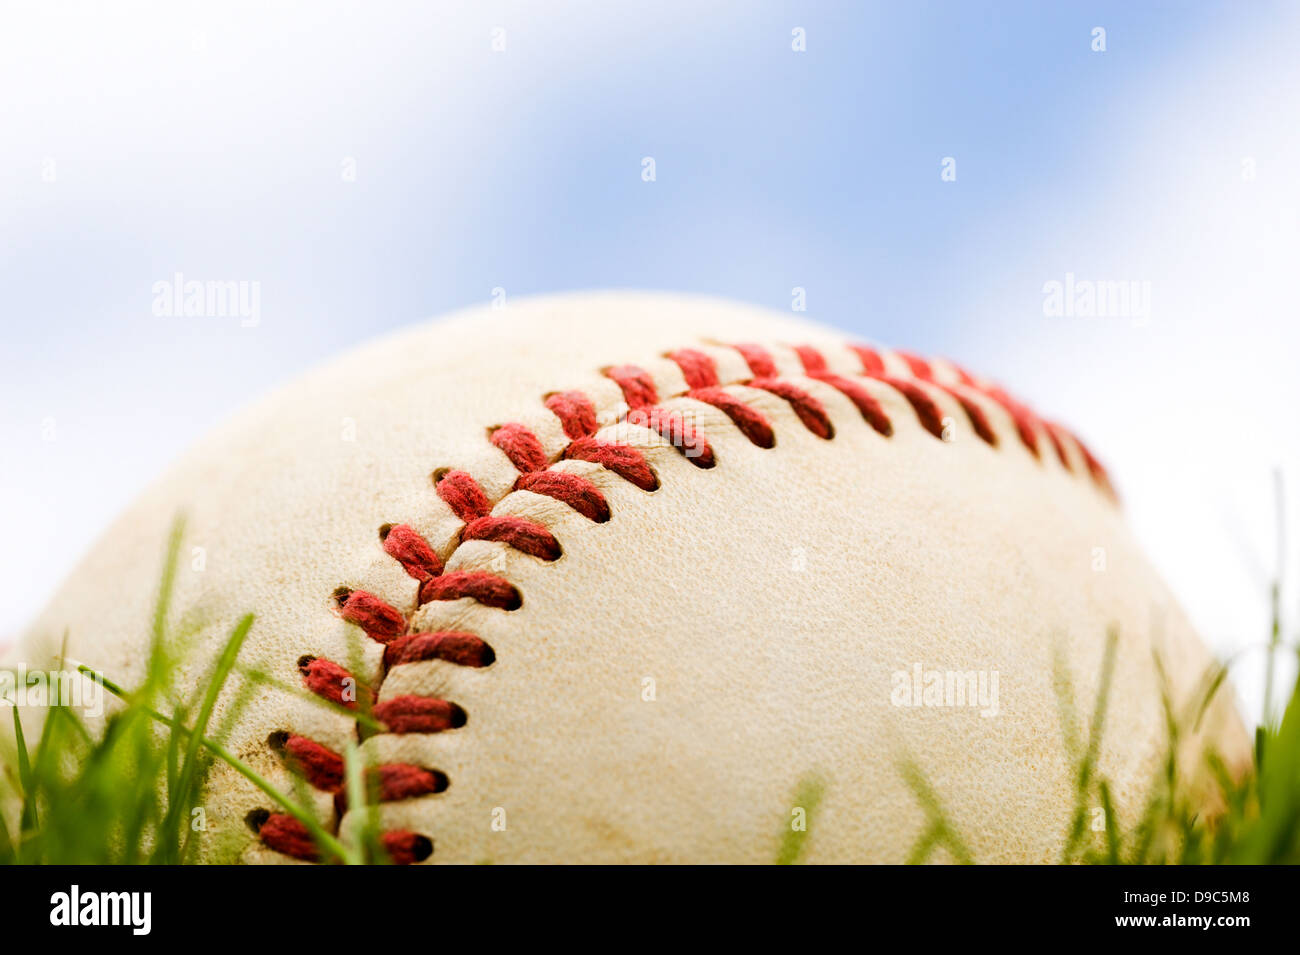 Close-up of a baseball allongé dans l'herbe contre un ciel partiellement nuageux Banque D'Images